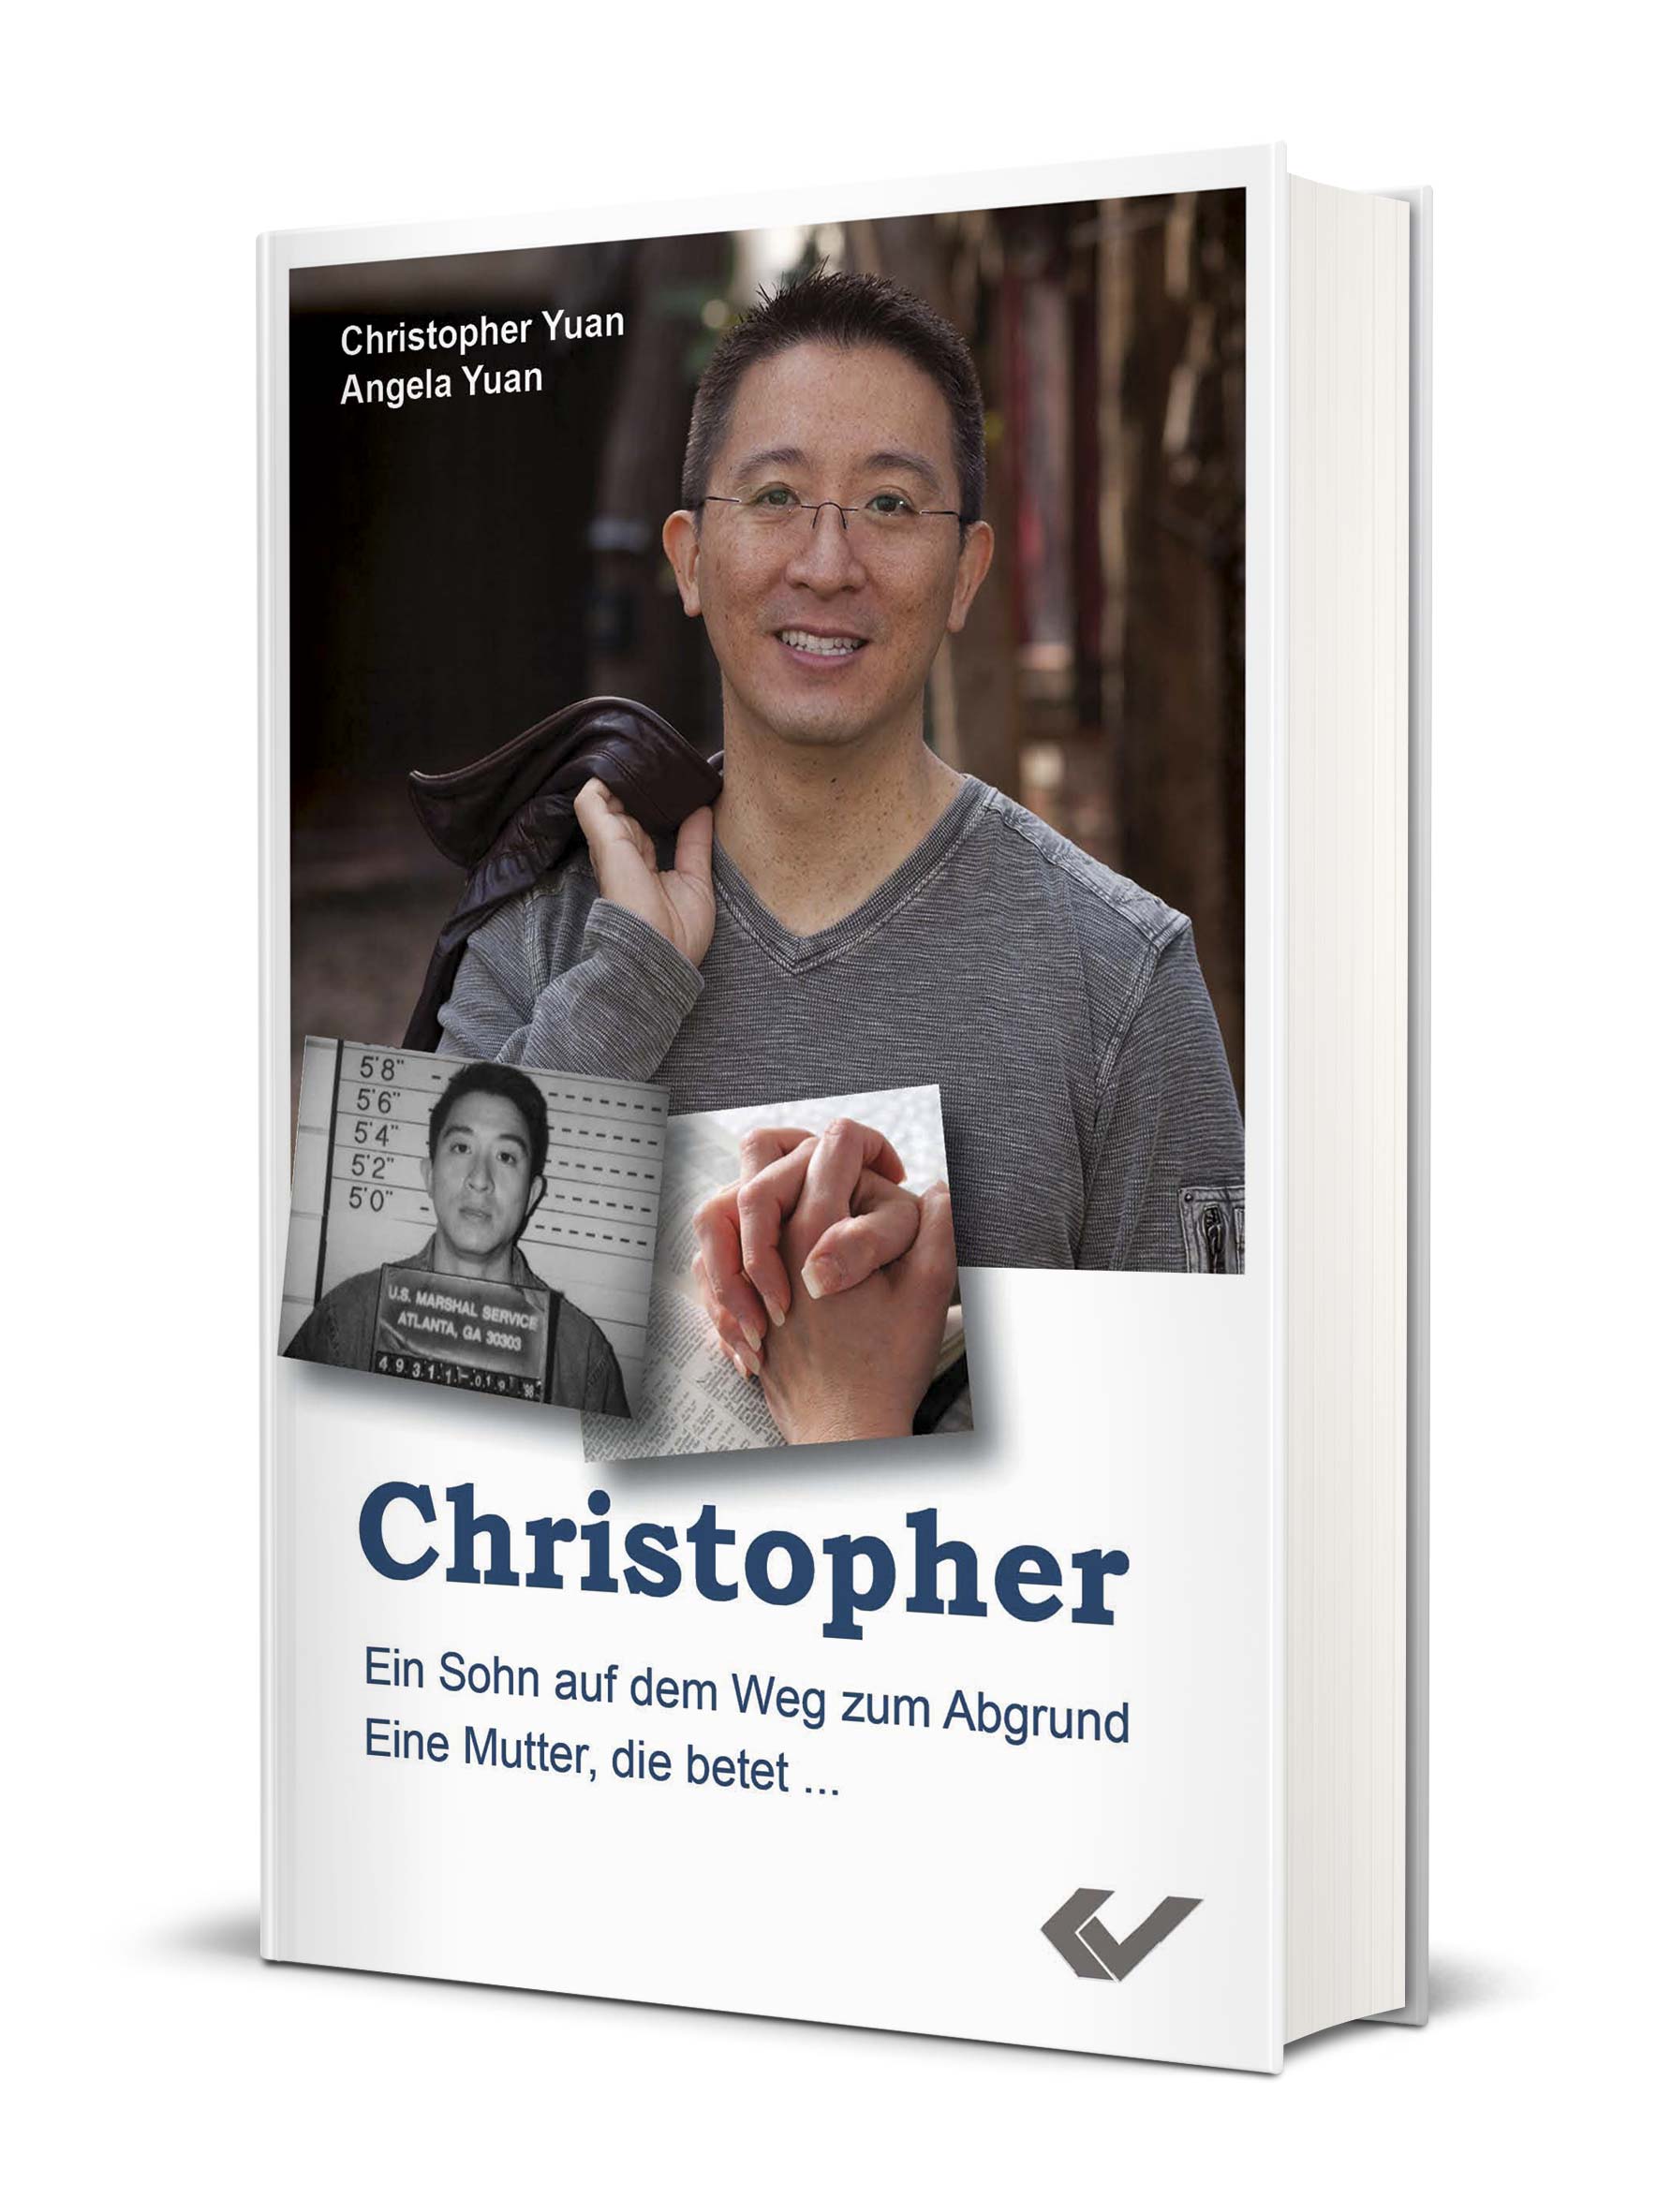 Christopher Yuan: Christopher - Ein Sohn auf dem Weg zum Abgrund. Eine Mutter, die betet.